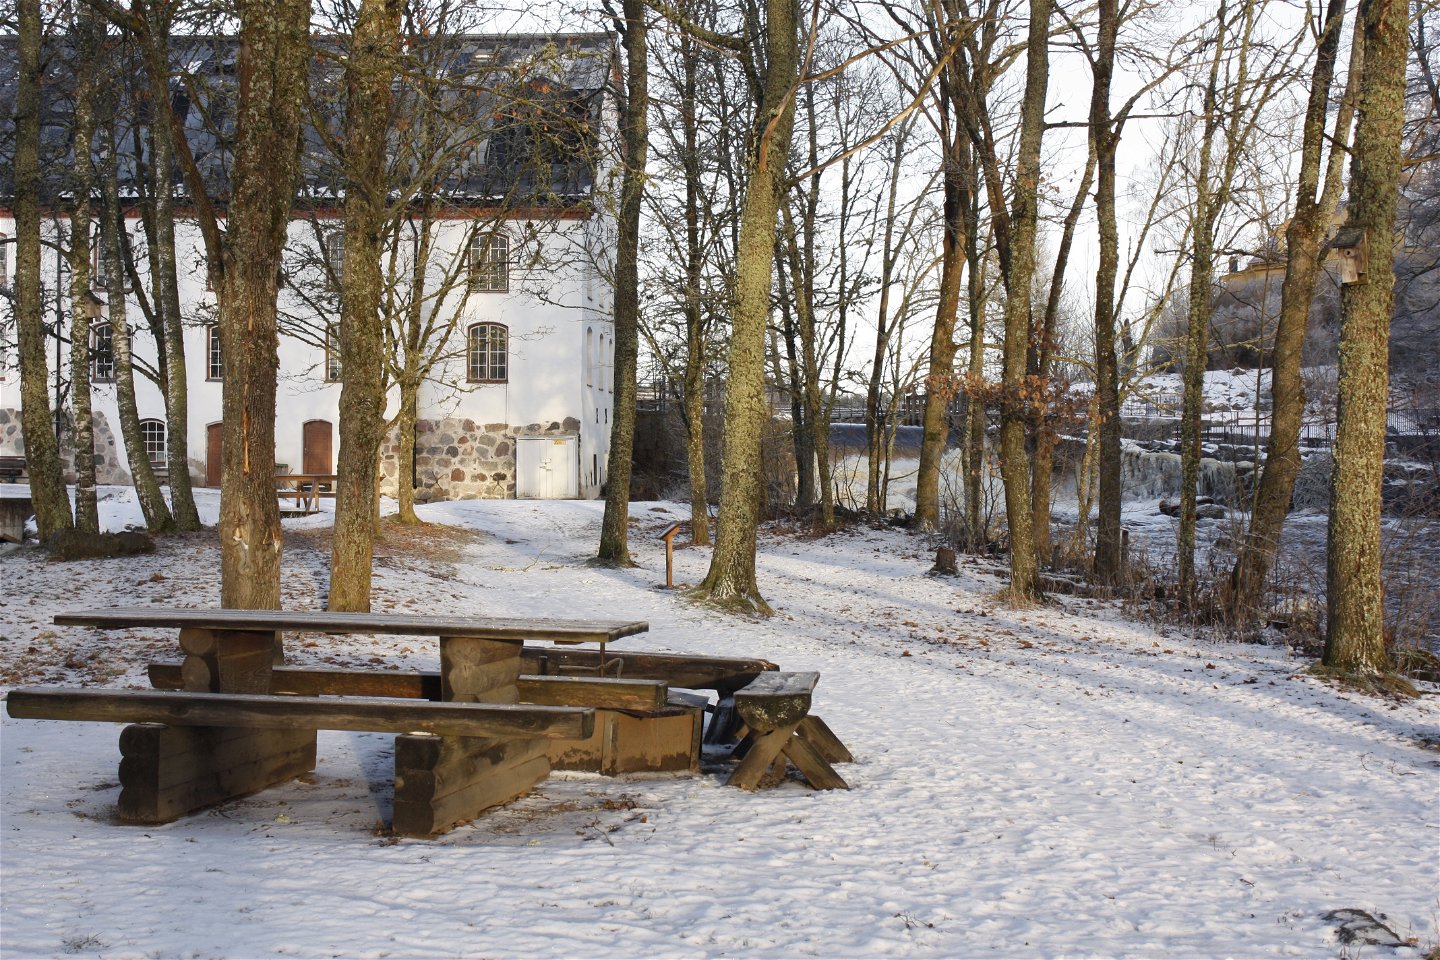 Ett bänkbord och en grillplats står i en dunge med träd runtom. Det ligger snö på marken och i bakgrunden står en byggnad.